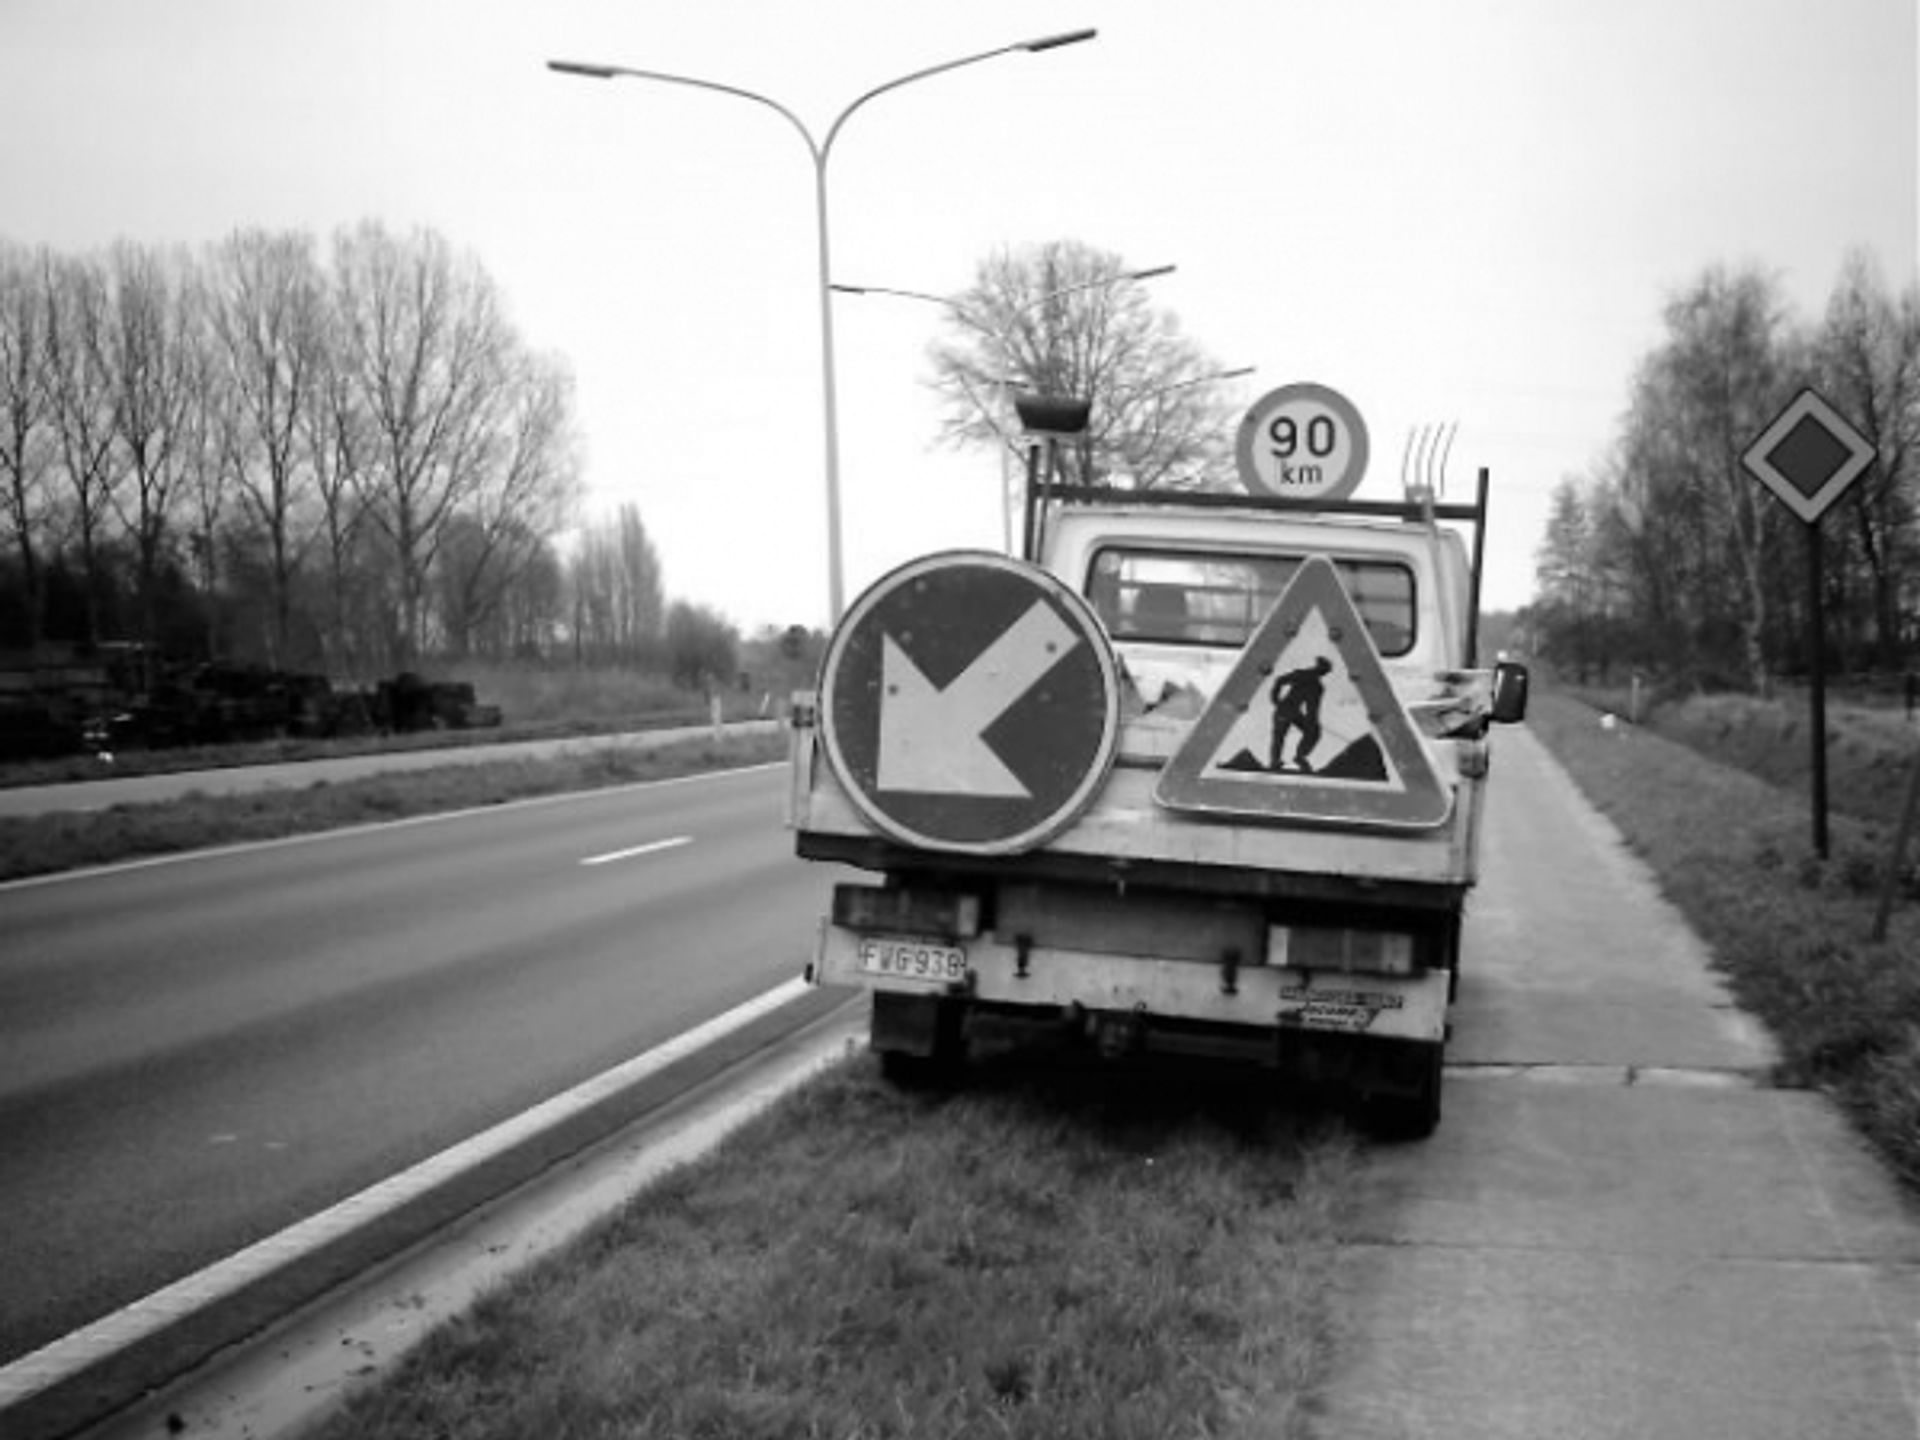  Strabag wygrywa przetarg na utrzymanie dróg w Szczecinie